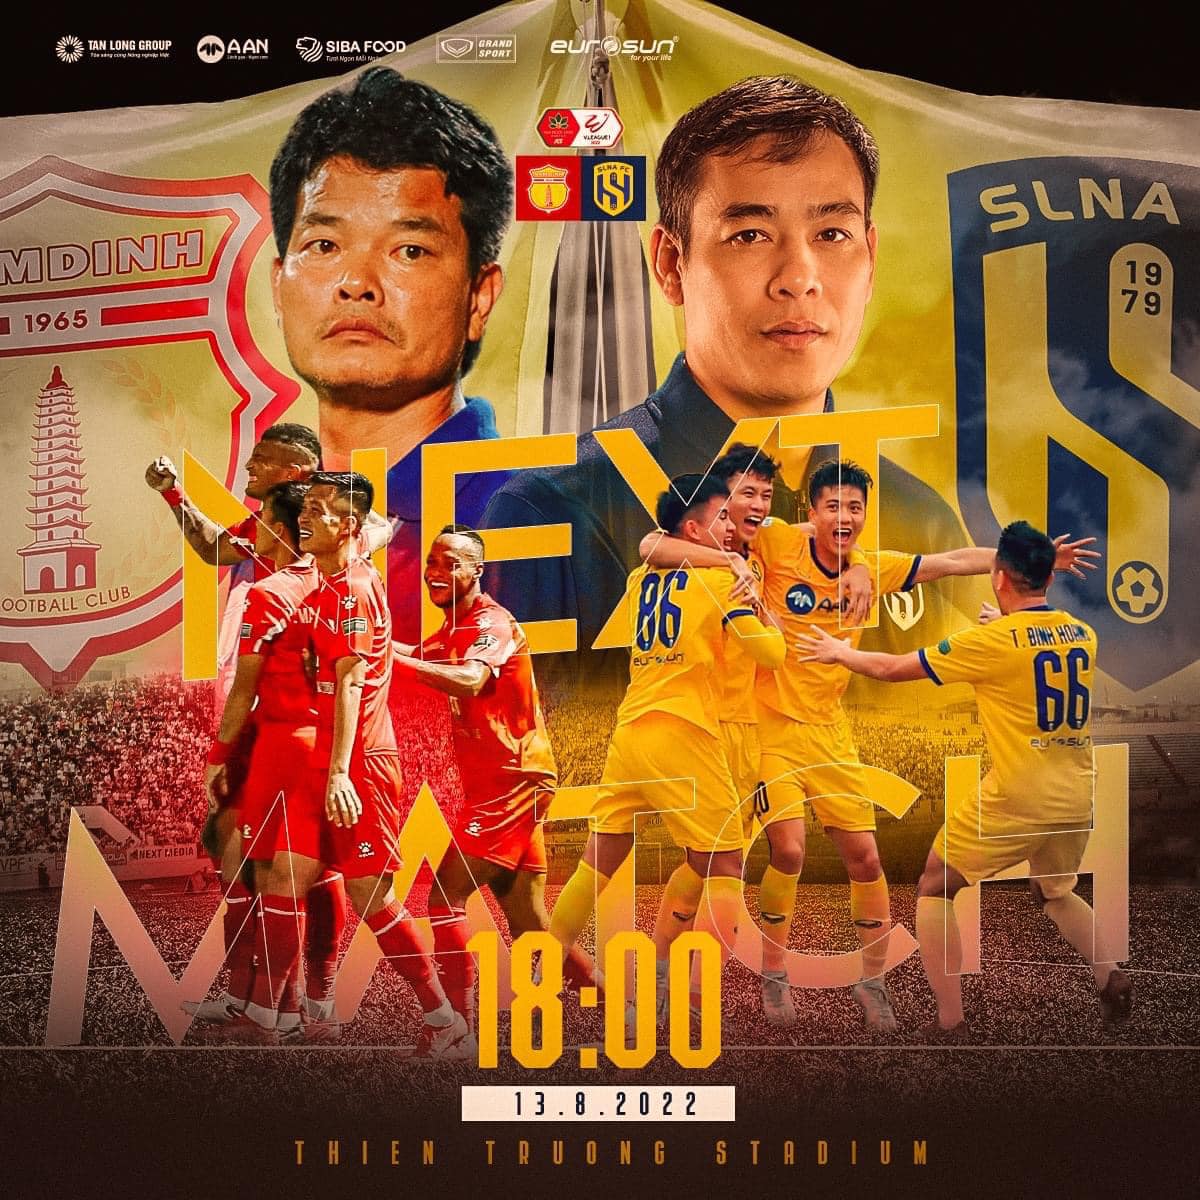 Nhận định Nam Định vs SLNA (18h00 13/08/2022) vòng 12 V-League: Chảo lửa Thiên Trường 